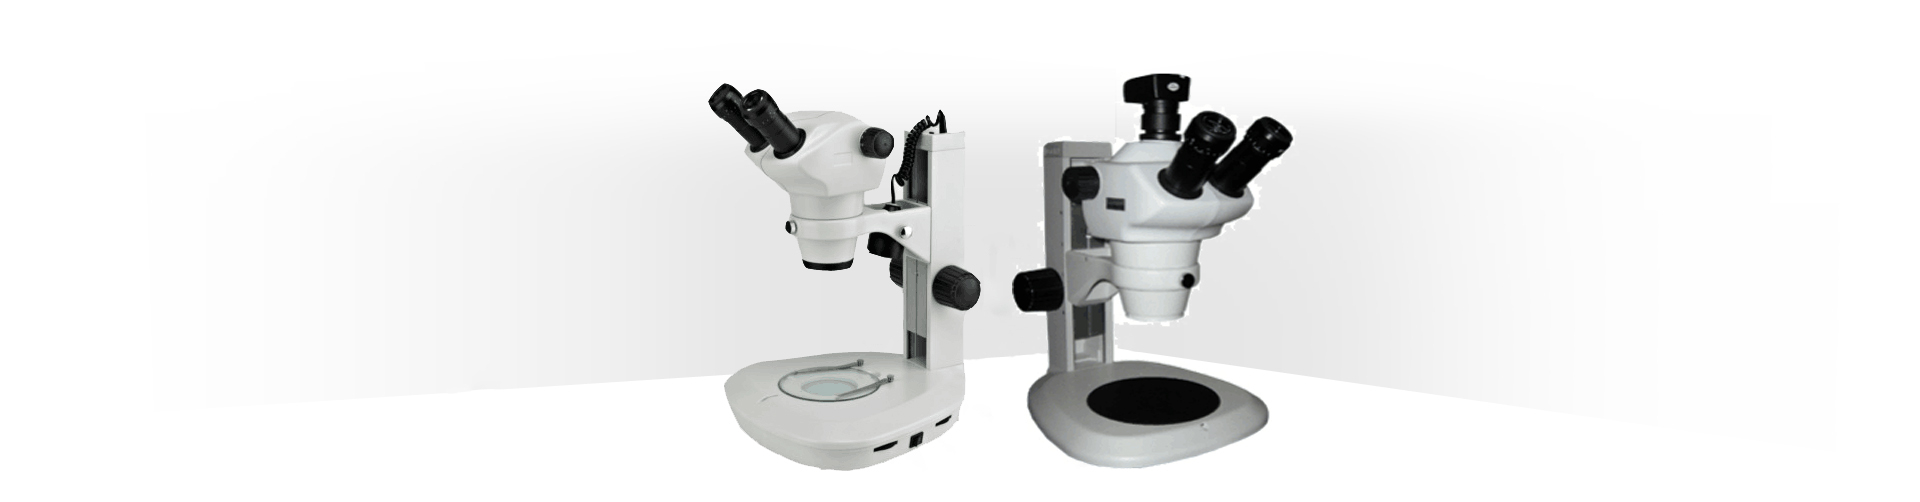 SZ6000系列体视显微镜